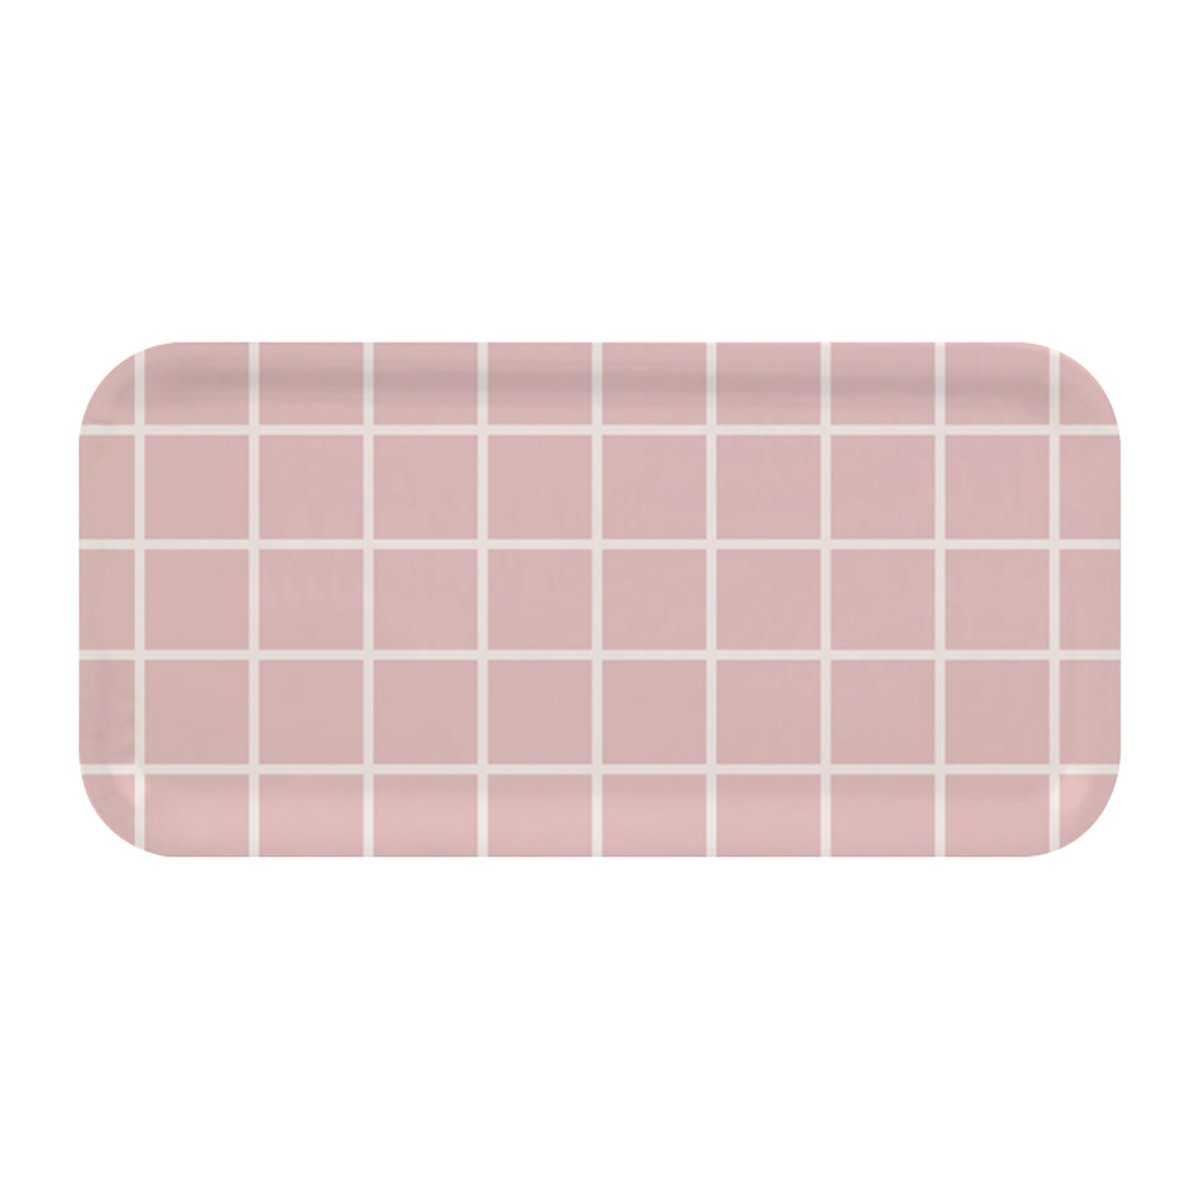 muurla plateau checks & stripes 13x27 cm rose-blanc